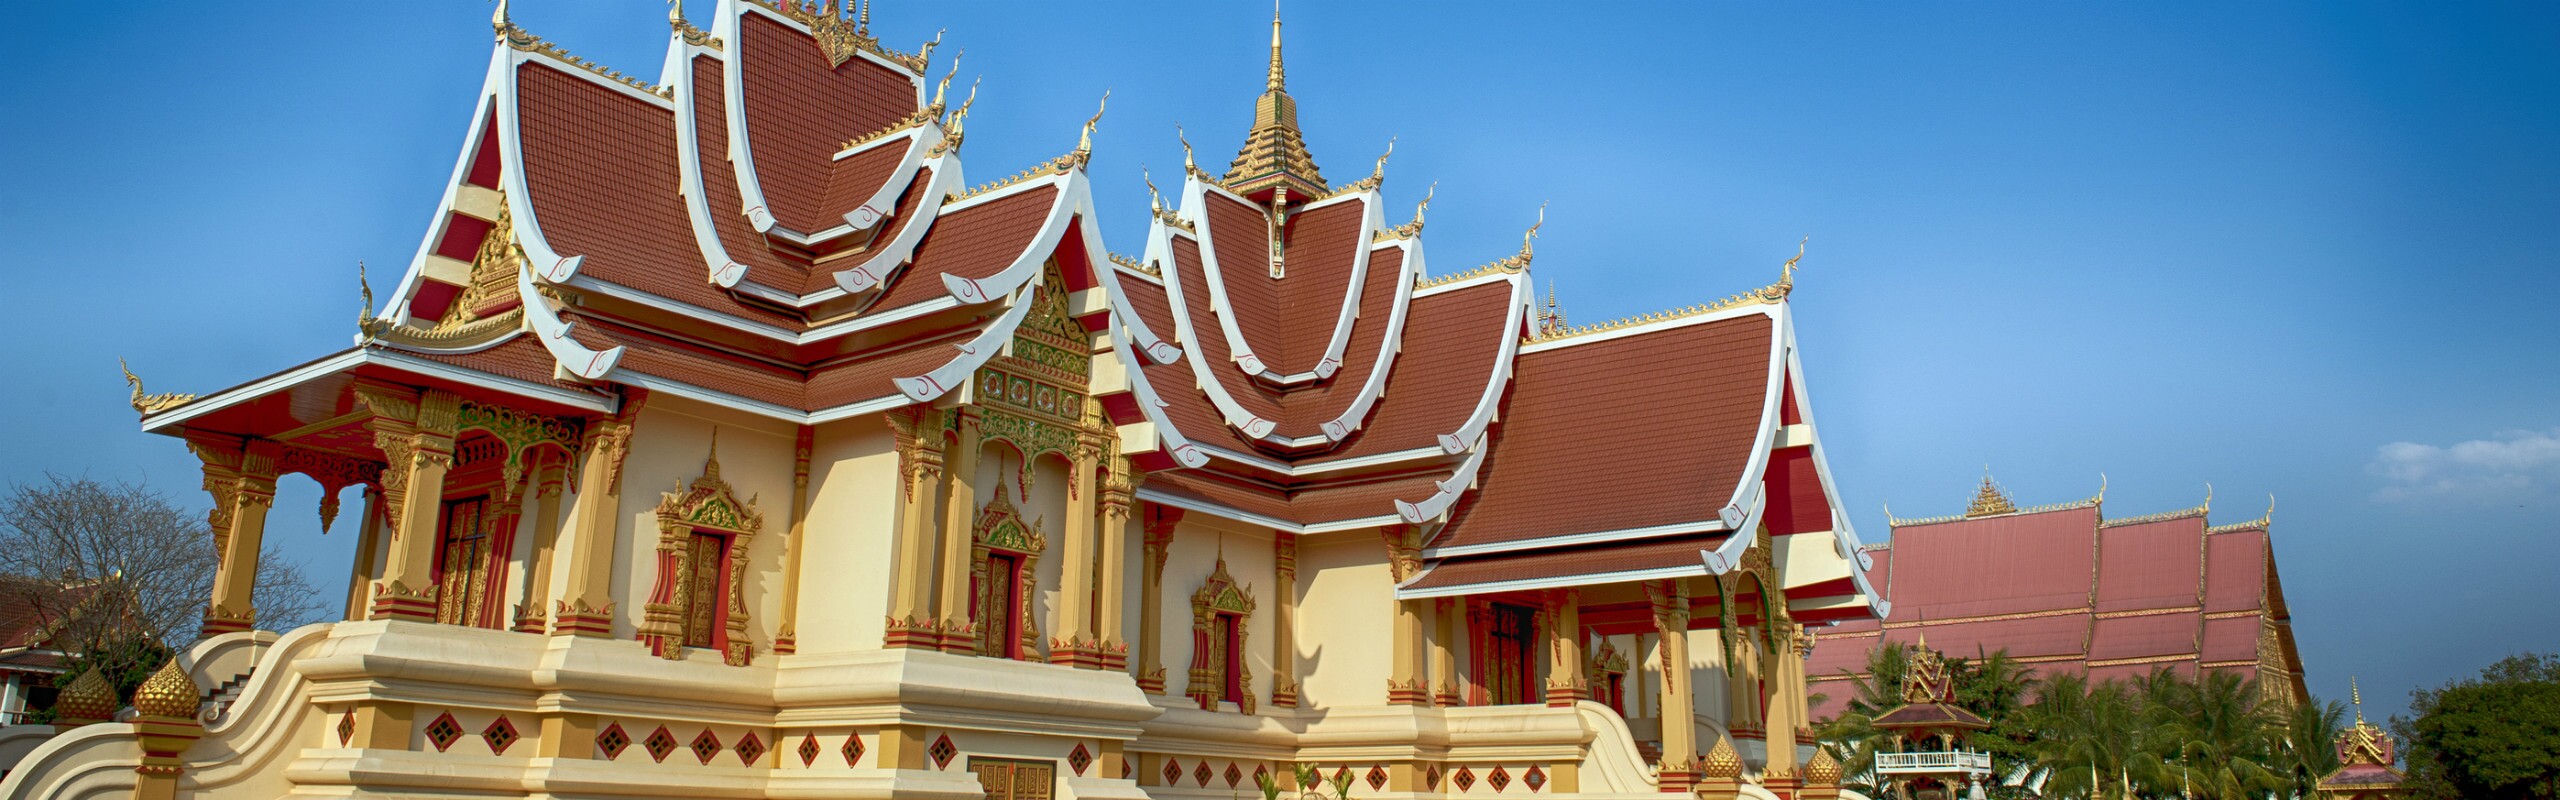 Pha That Luang: Vientiane Great Stupa